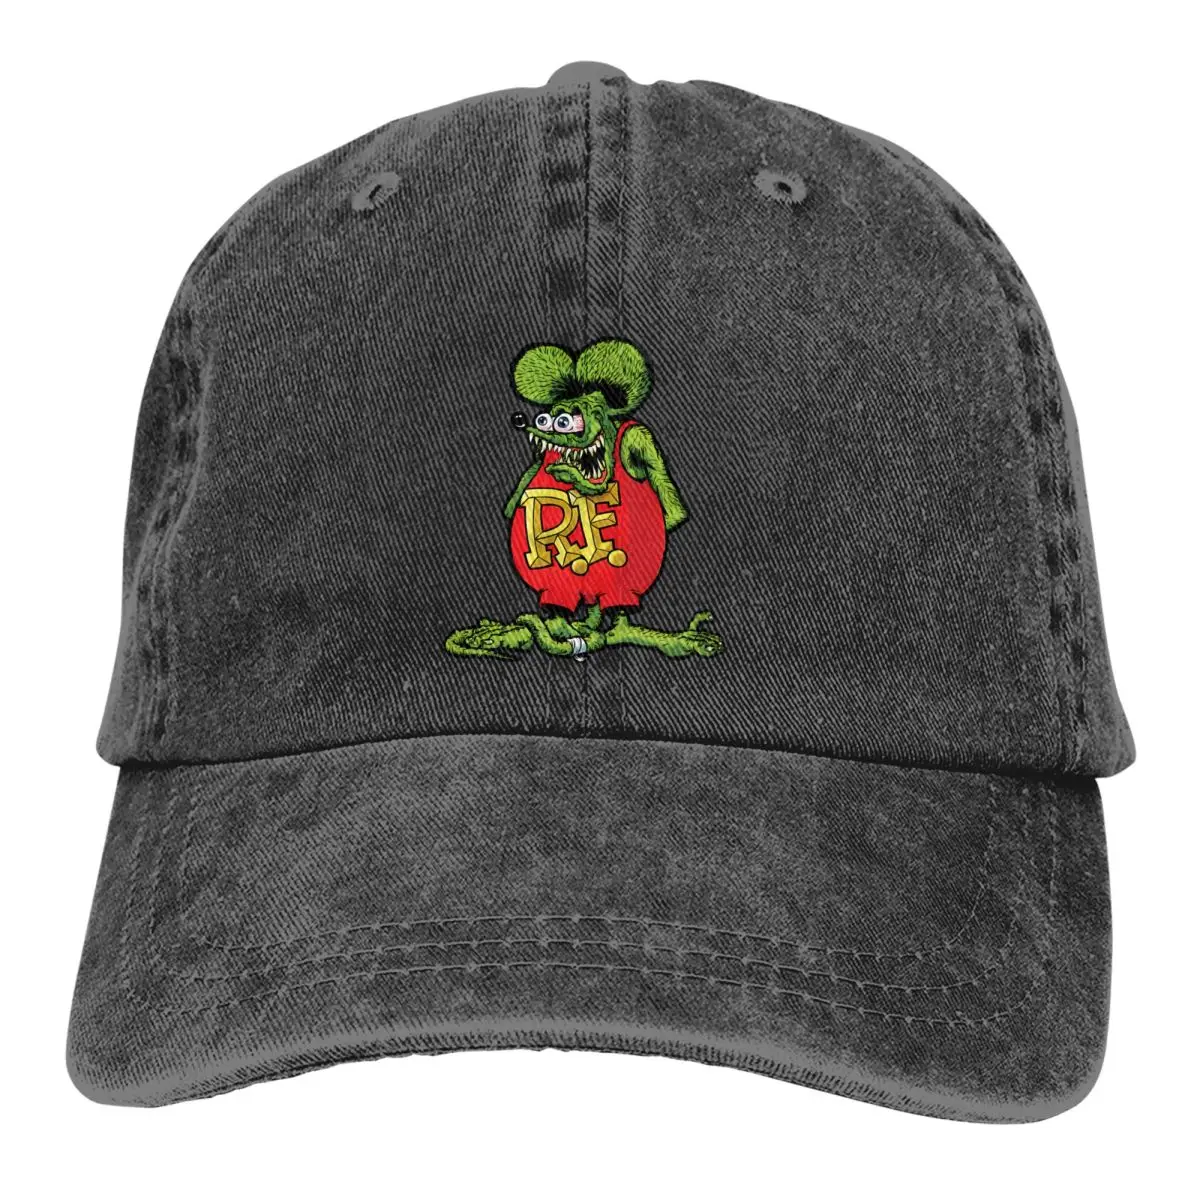 

Washed Men's Baseball Cap Humor Trucker Snapback Caps Dad Hat Tales of the Rat Fink Cartoon Film Golf Hats